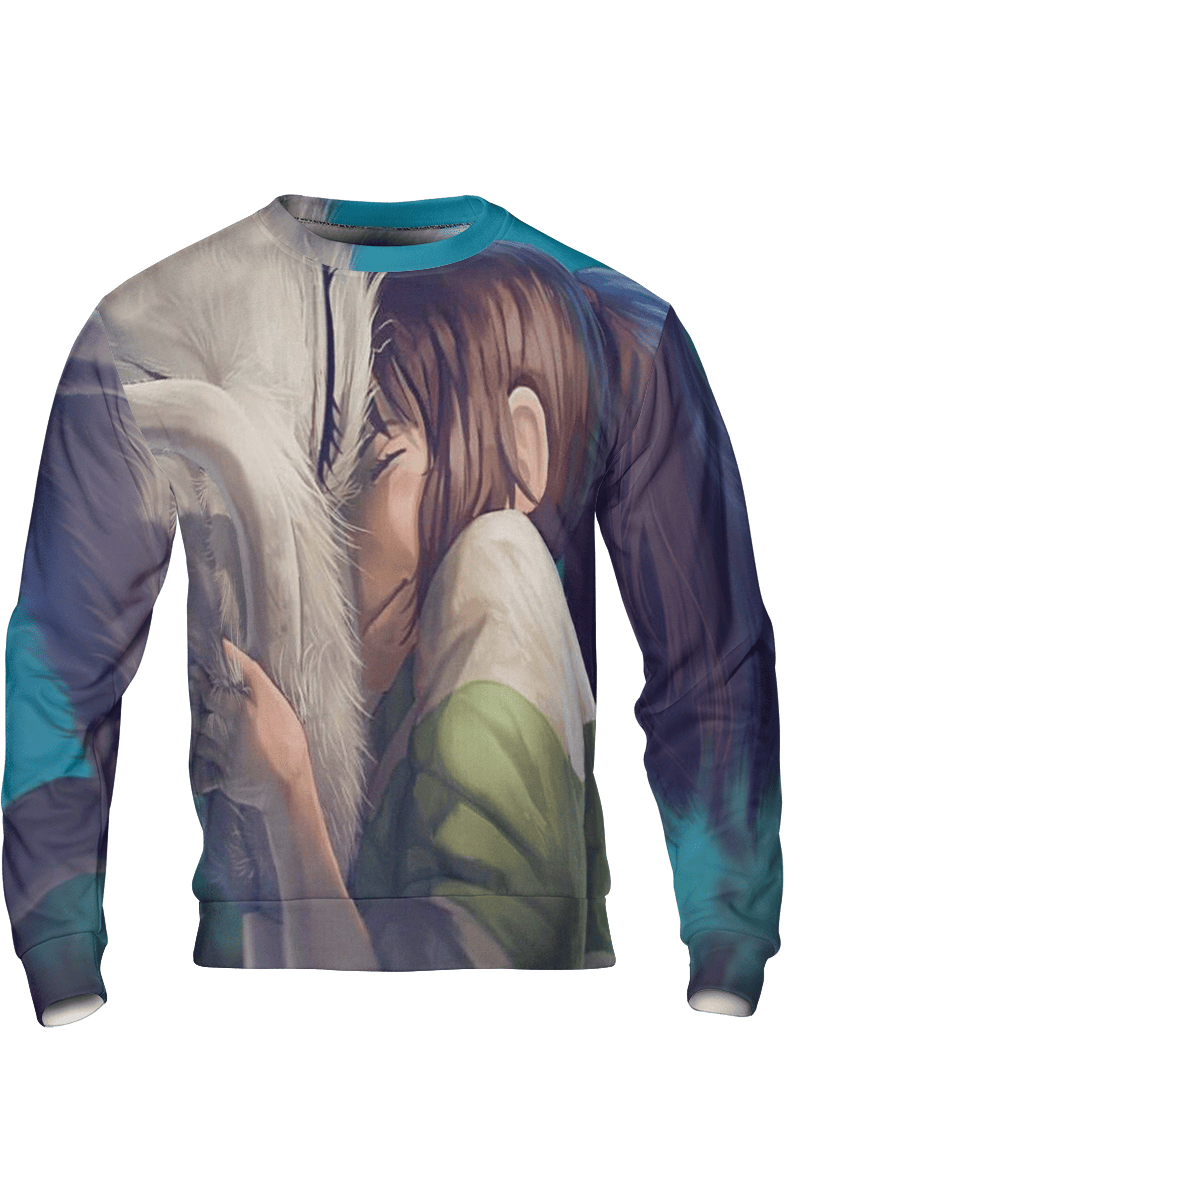 Spirited Away Chihiro and Haku Dragon 3D Sweatshirt